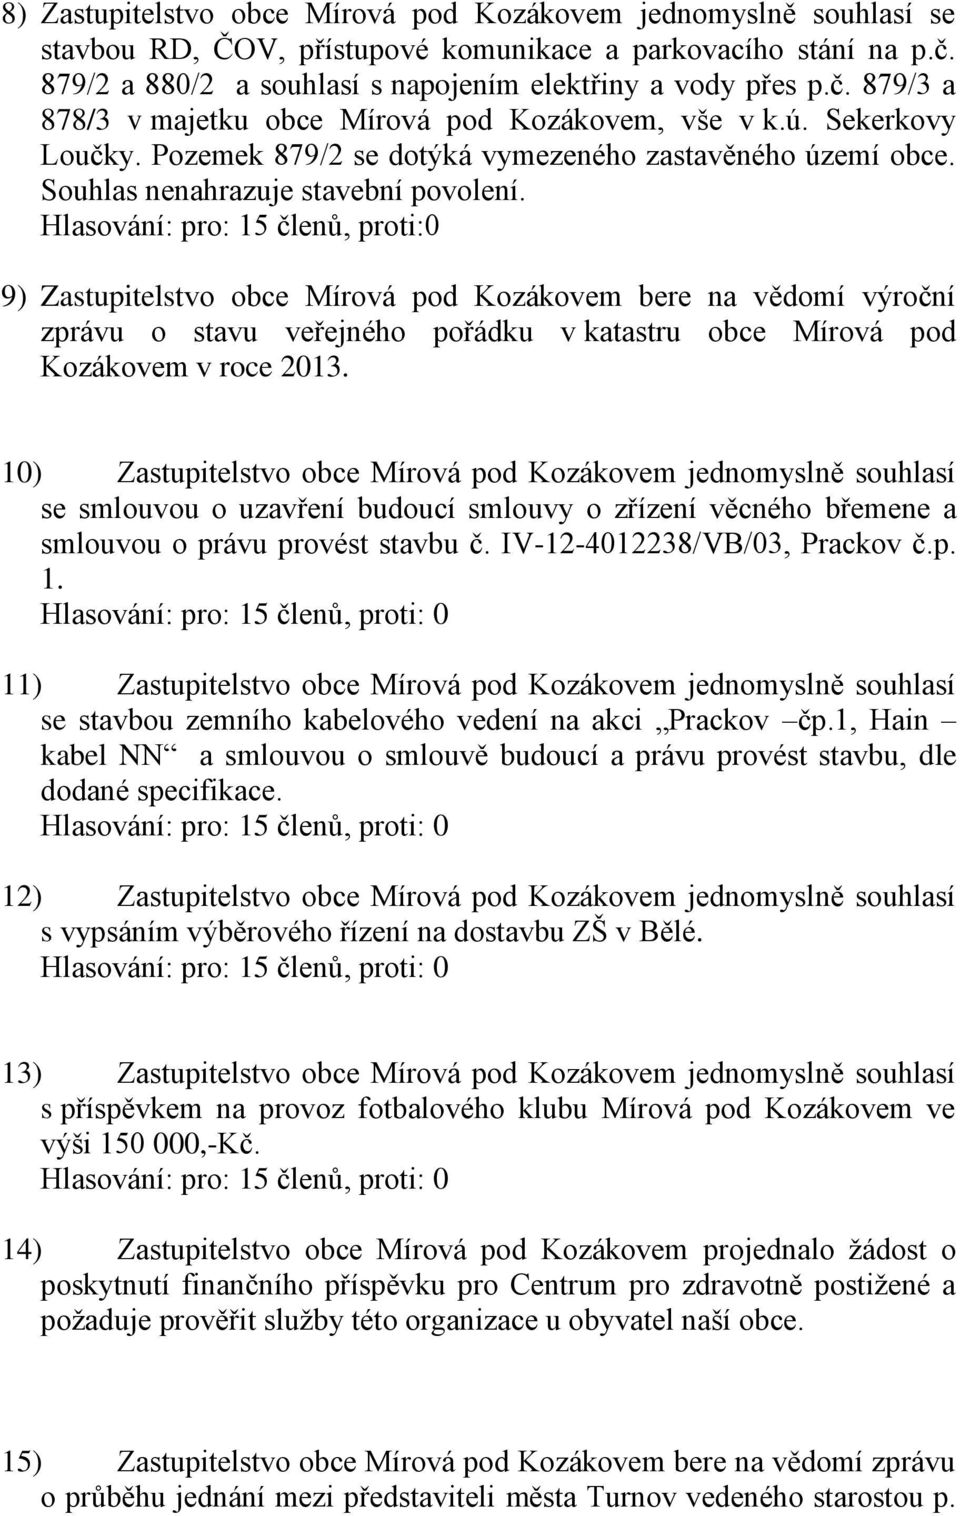 9) Zastupitelstvo obce Mírová pod Kozákovem bere na vědomí výroční zprávu o stavu veřejného pořádku v katastru obce Mírová pod Kozákovem v roce 2013.